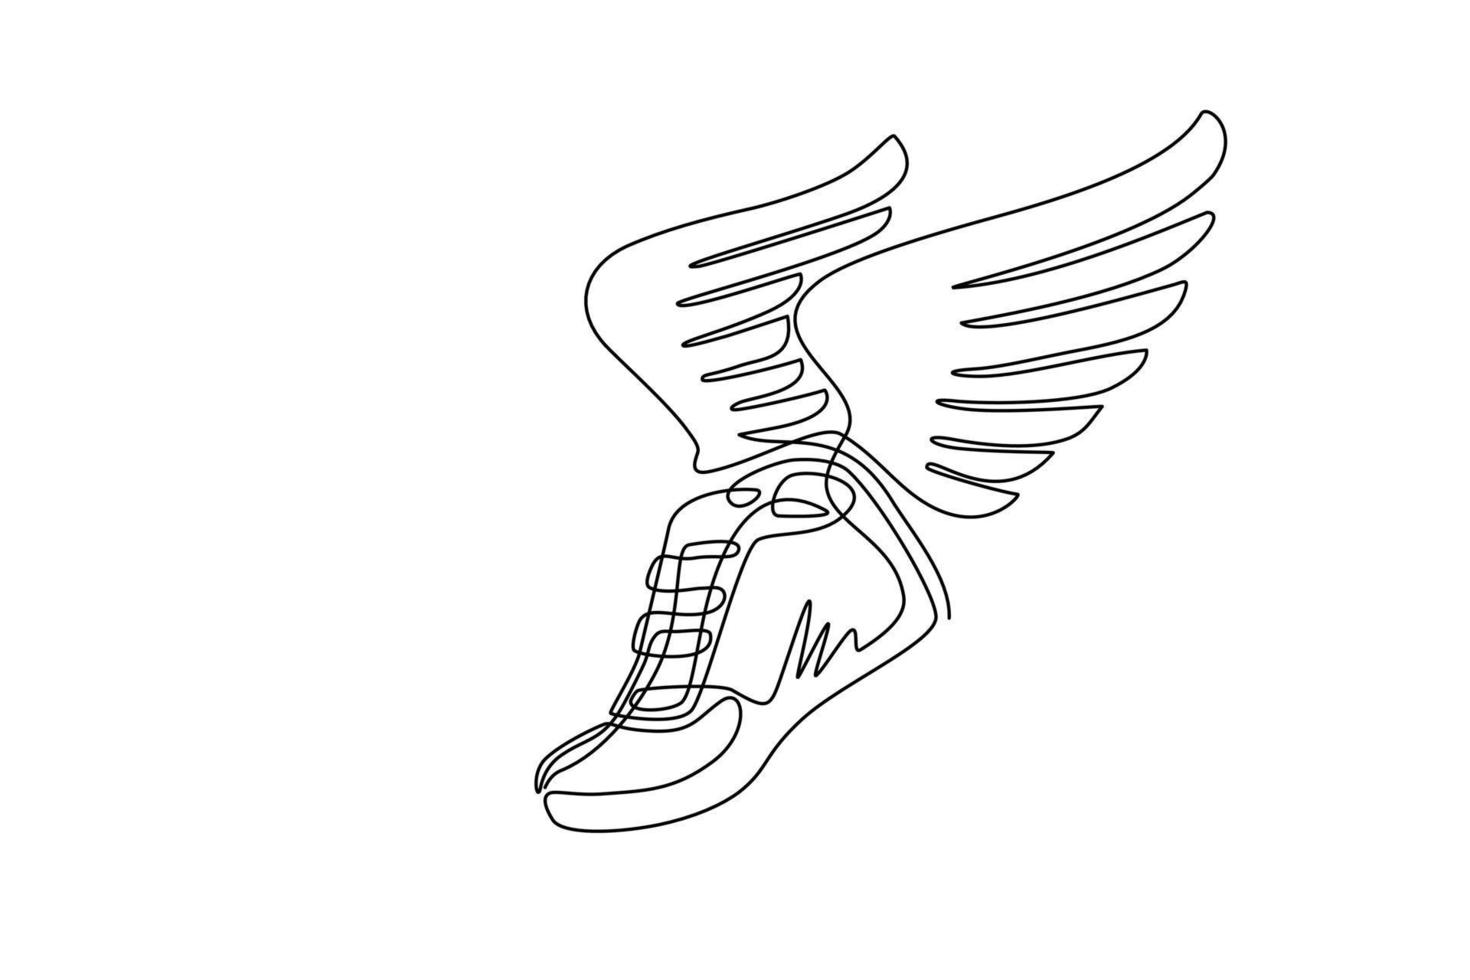 zapatillas de correr de dibujo de una línea continua con alas aisladas. elemento de plantilla de diseño vintage minimalista y estilizado para impresión, etiqueta, insignia u otro símbolo. gráfico vectorial de diseño de dibujo de una sola línea vector